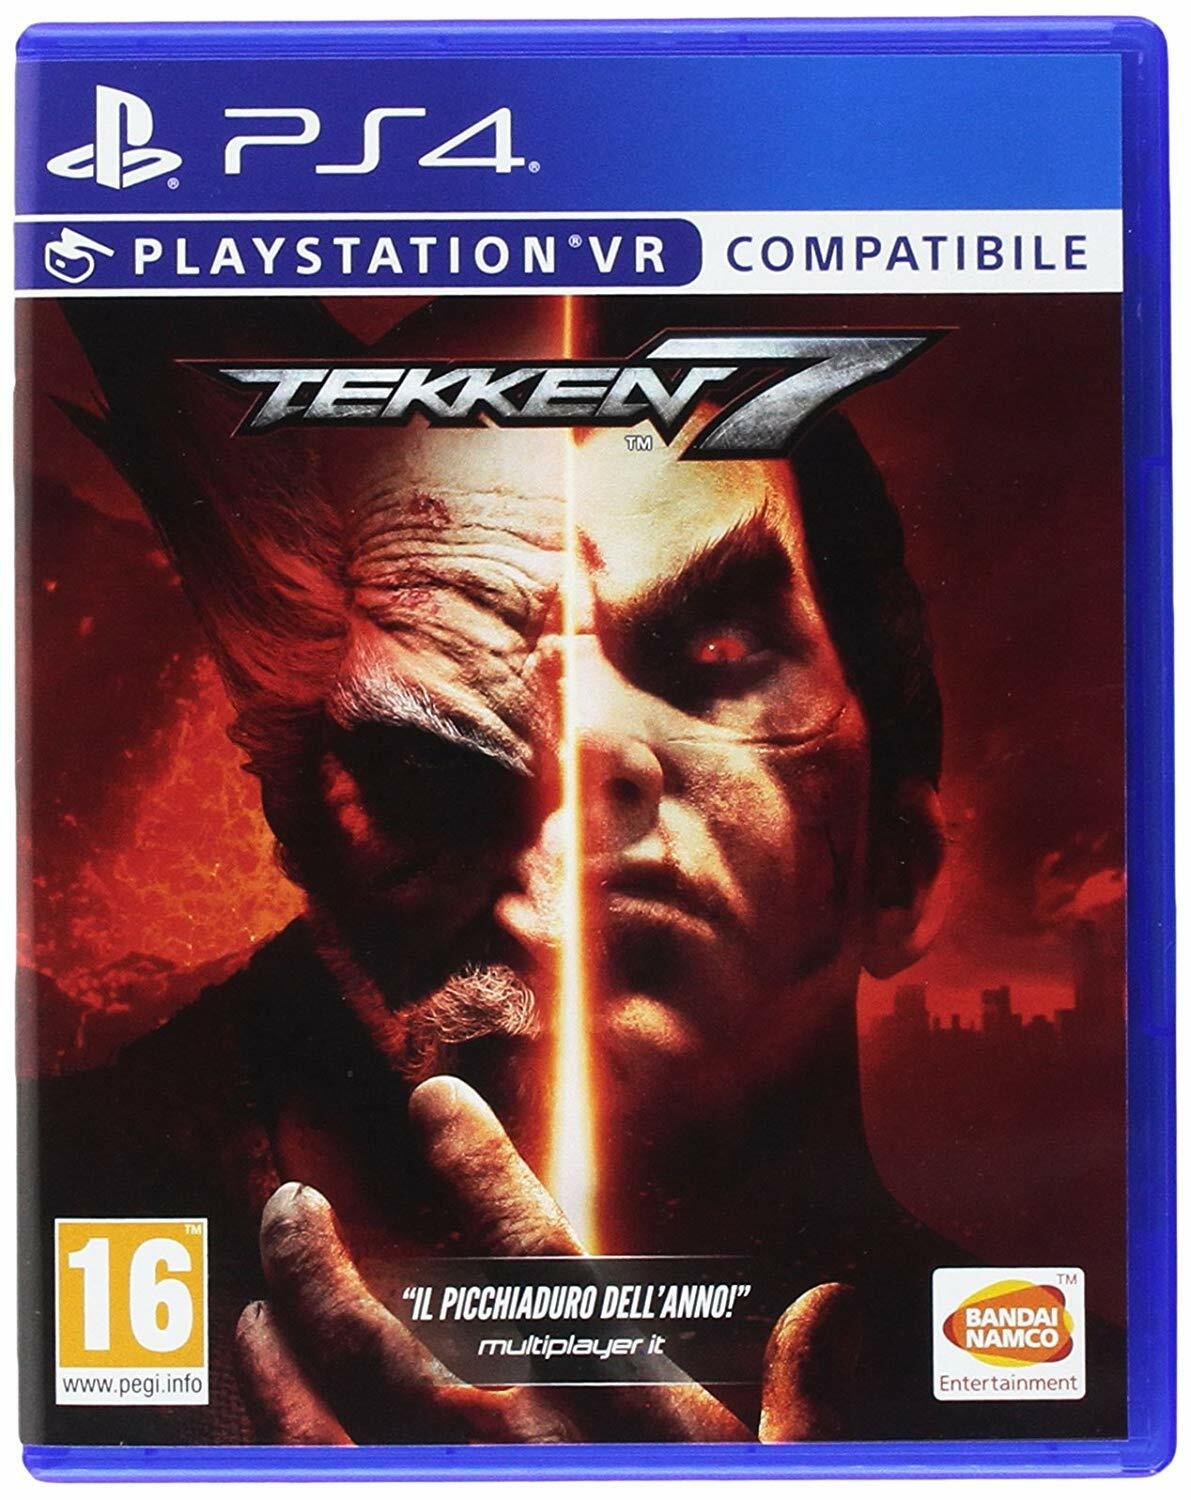 Packshot di Tekken 7 per PS4